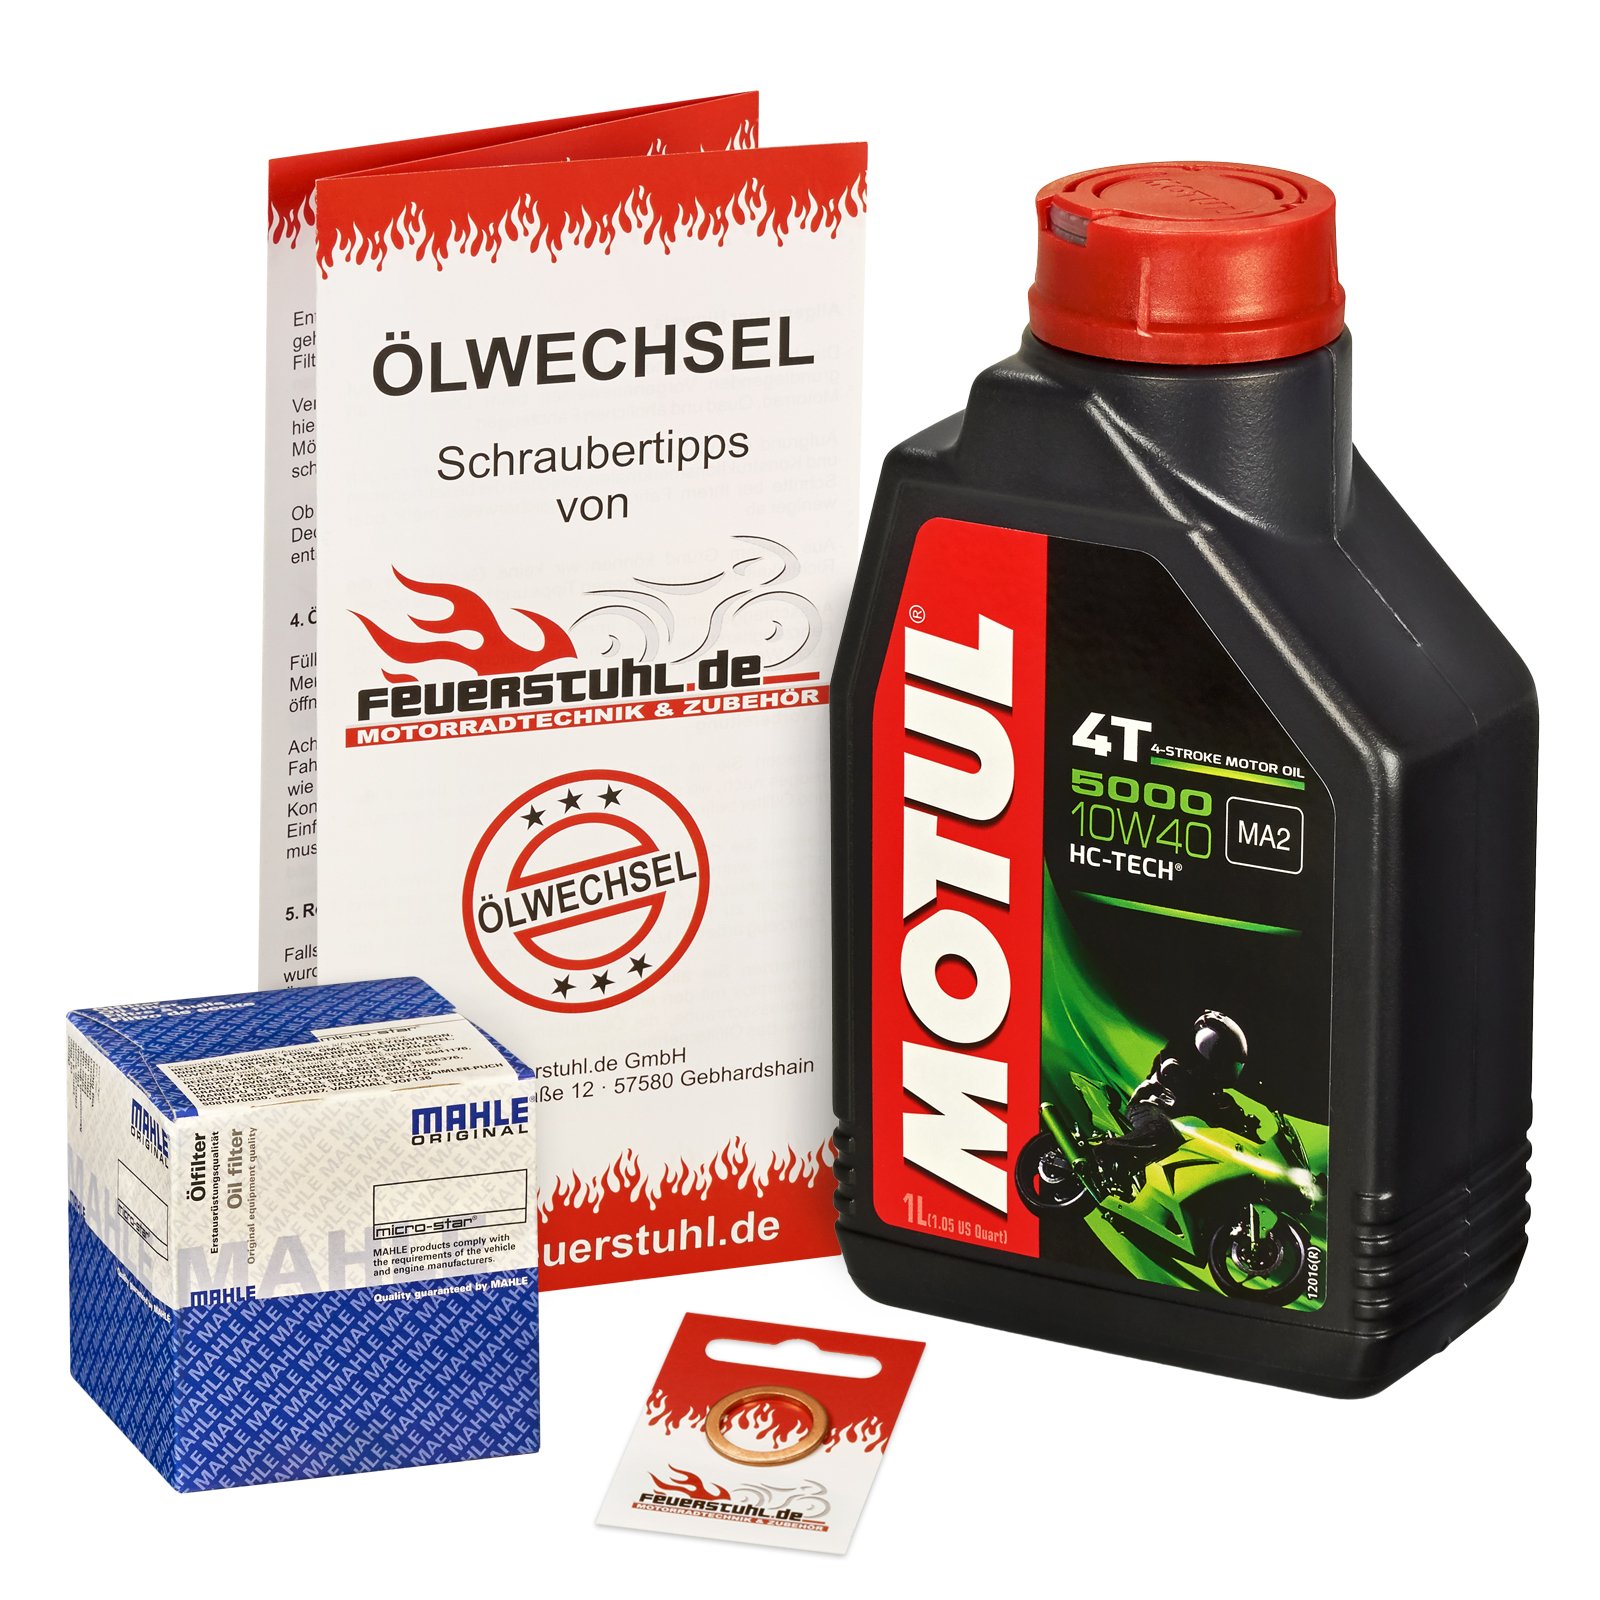 Motul 10W-40 Öl + Mahle Ölfilter für Suzuki DR 125 SM, 08-13, CS - Ölwechselset inkl. Motoröl, Filter, Dichtring von Feuerstuhl.de GmbH